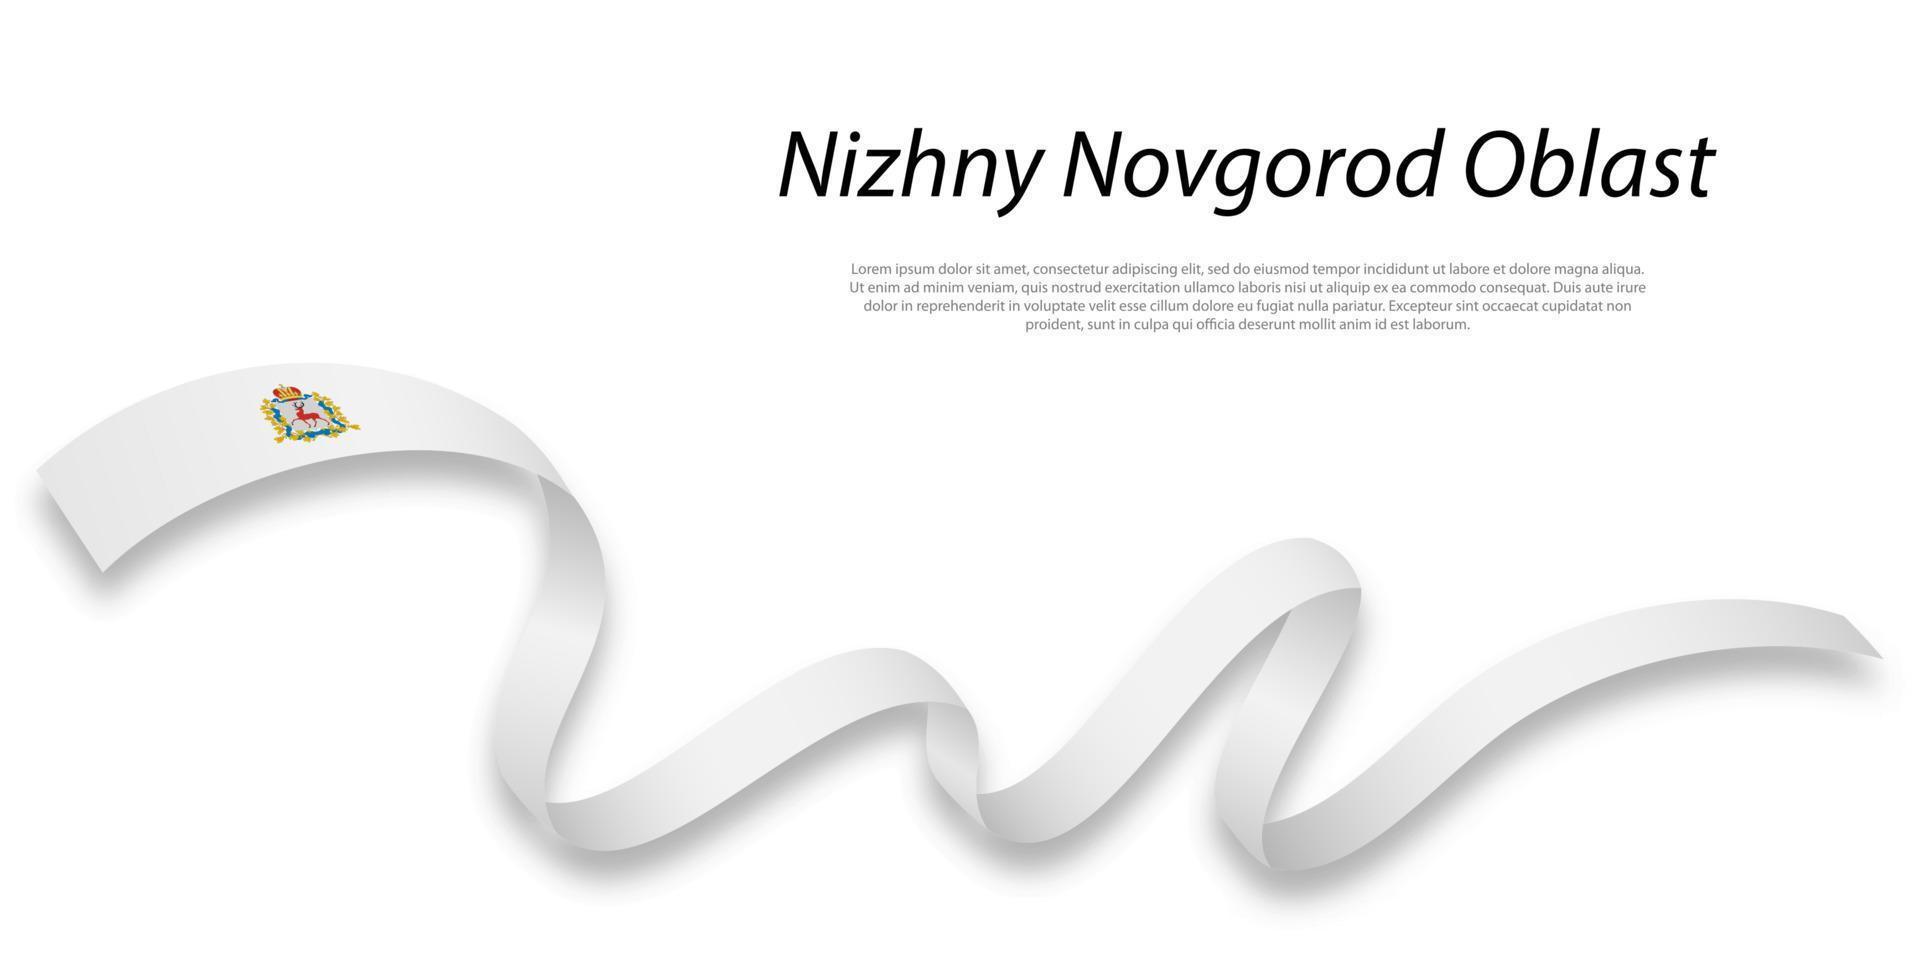 acenando fita ou listra com bandeira do Nizhny Novgorod oblast vetor